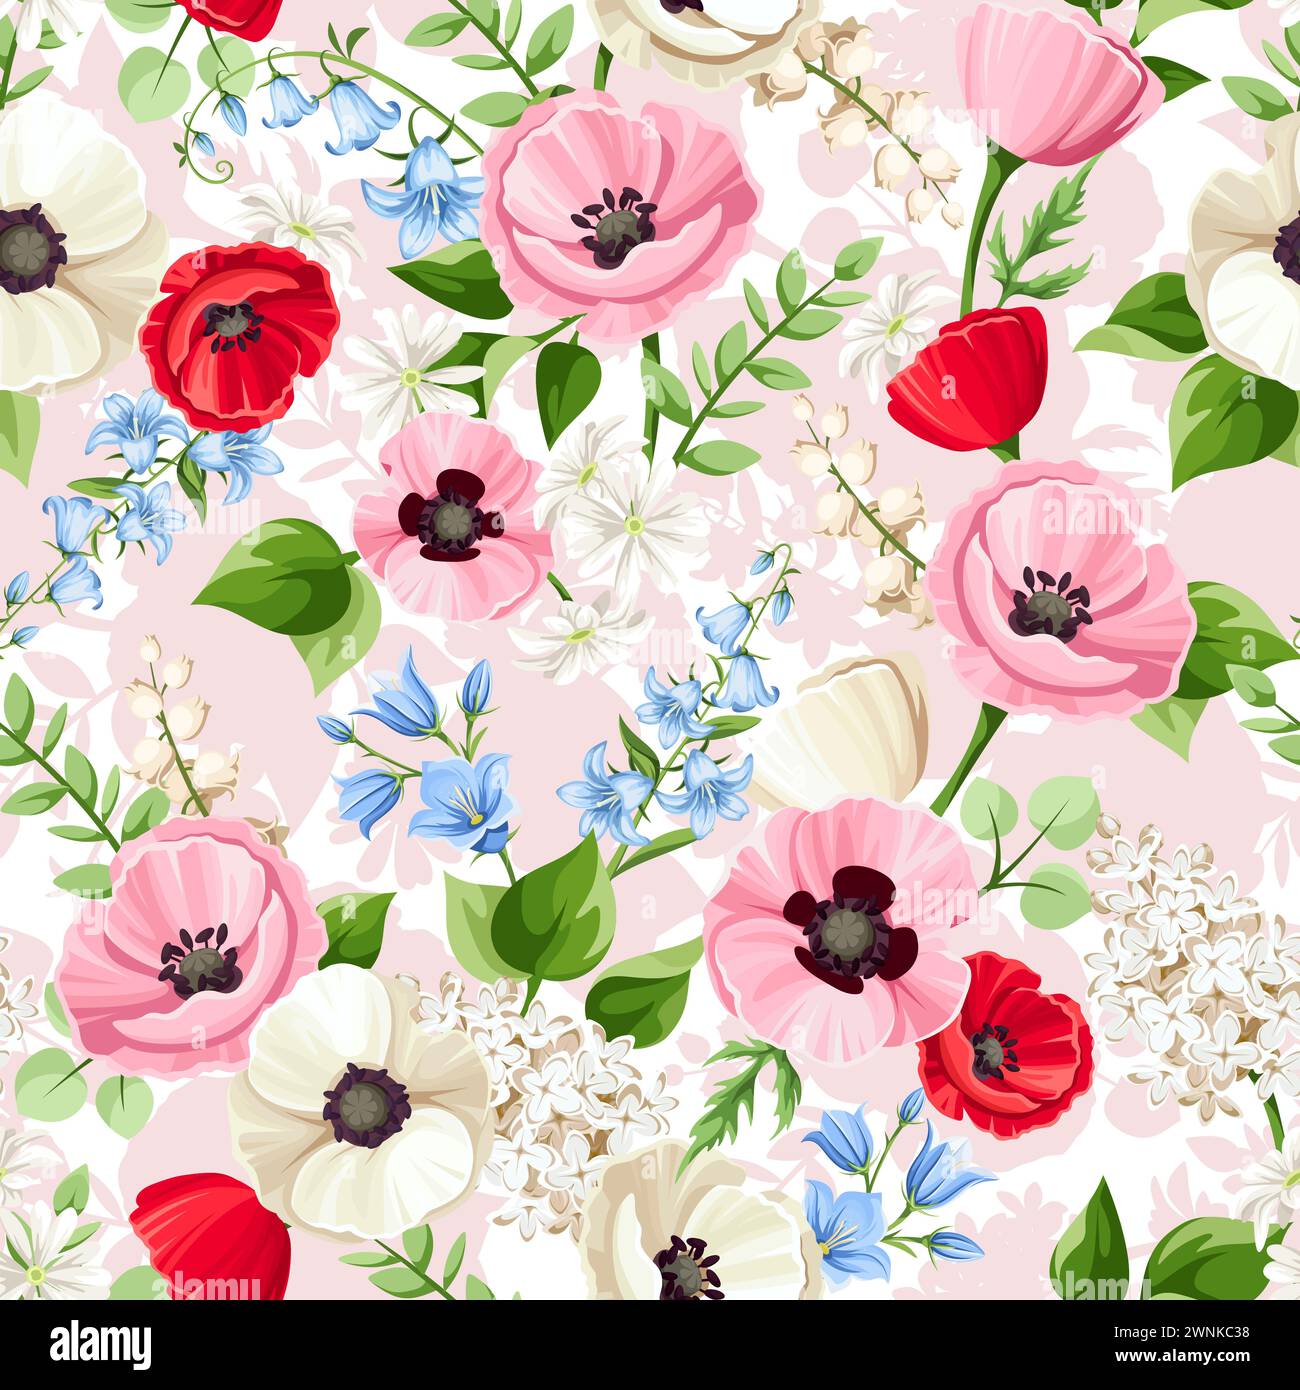 Motif floral sans couture avec des fleurs de coquelicot rouges, roses, bleues et blanches, des fleurs de bluebell, du lilas et des fleurs de nénuphar sur un fond rose. V Illustration de Vecteur